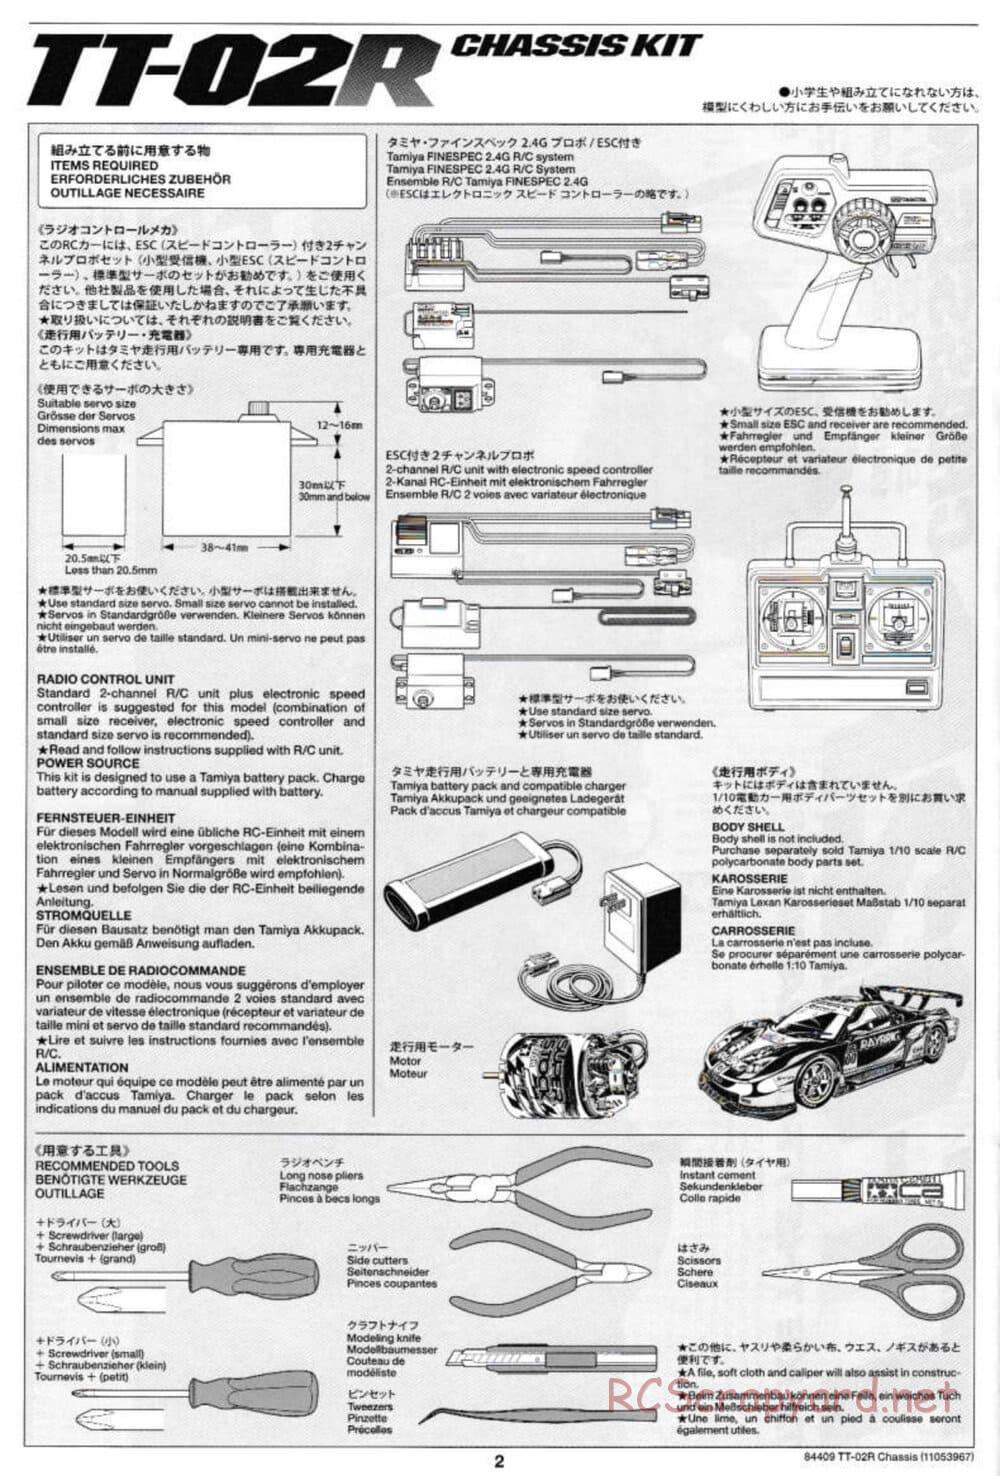 Tamiya - TT-02R Chassis - Manual - Page 2